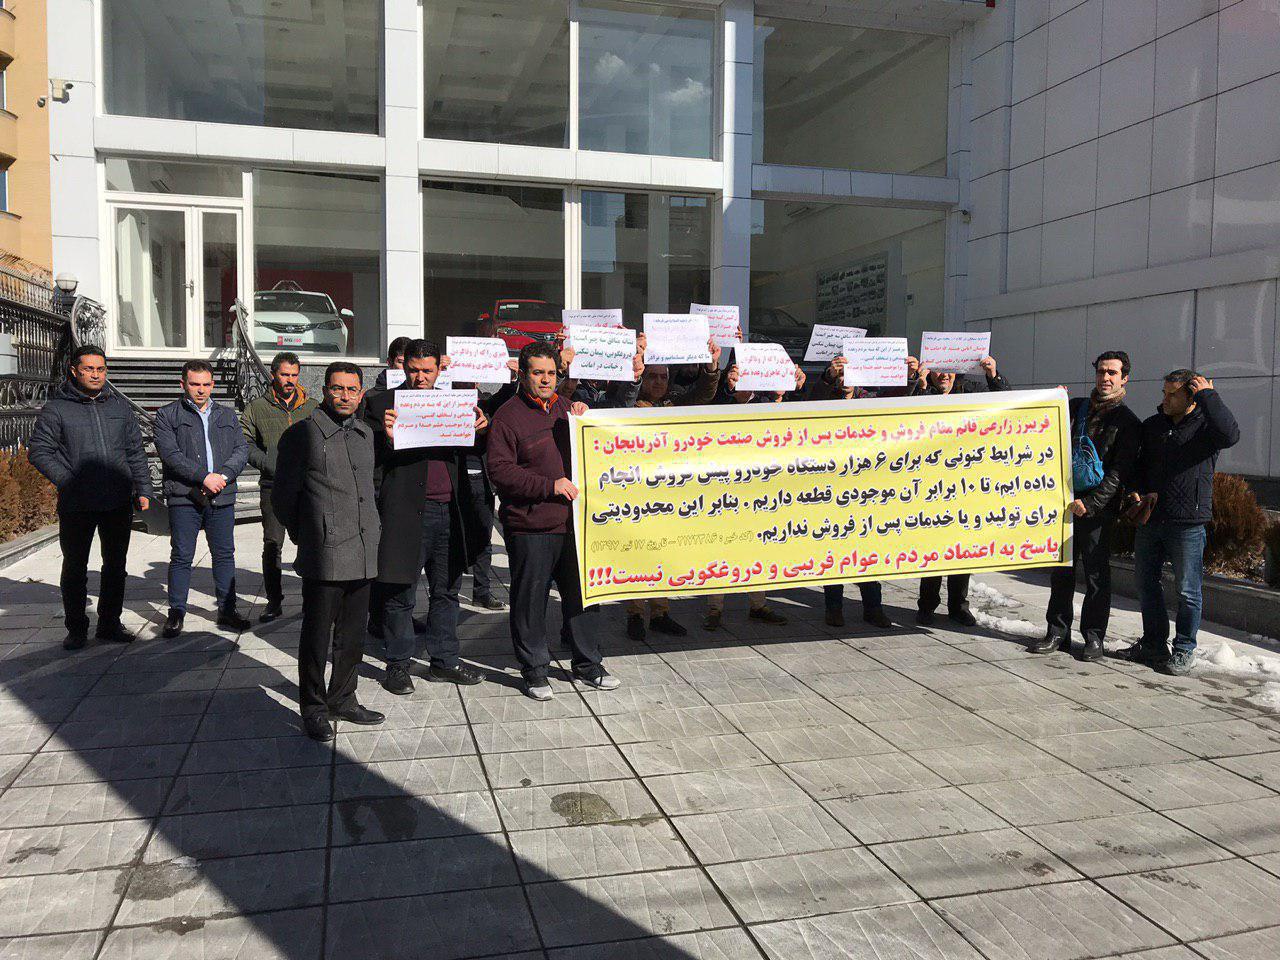 تجمع امروز مال باختگان صنعت خودرو آذربایجان (آذویکو) جلوی وزارت صنعت و معدن و تجارت در تبریز